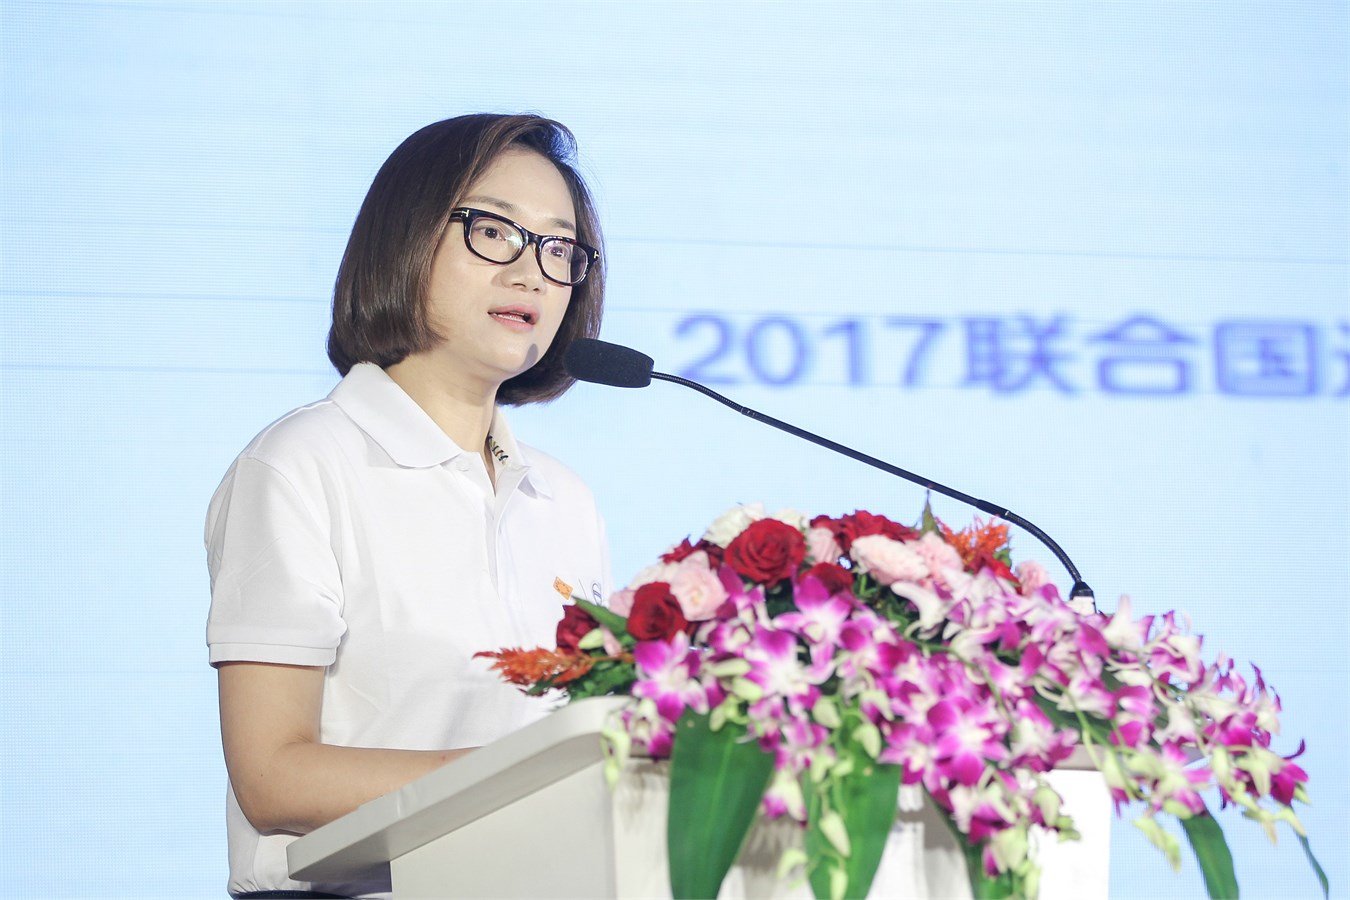 沃尔沃汽车集团亚太区企业传播副总裁赵琴女士致辞